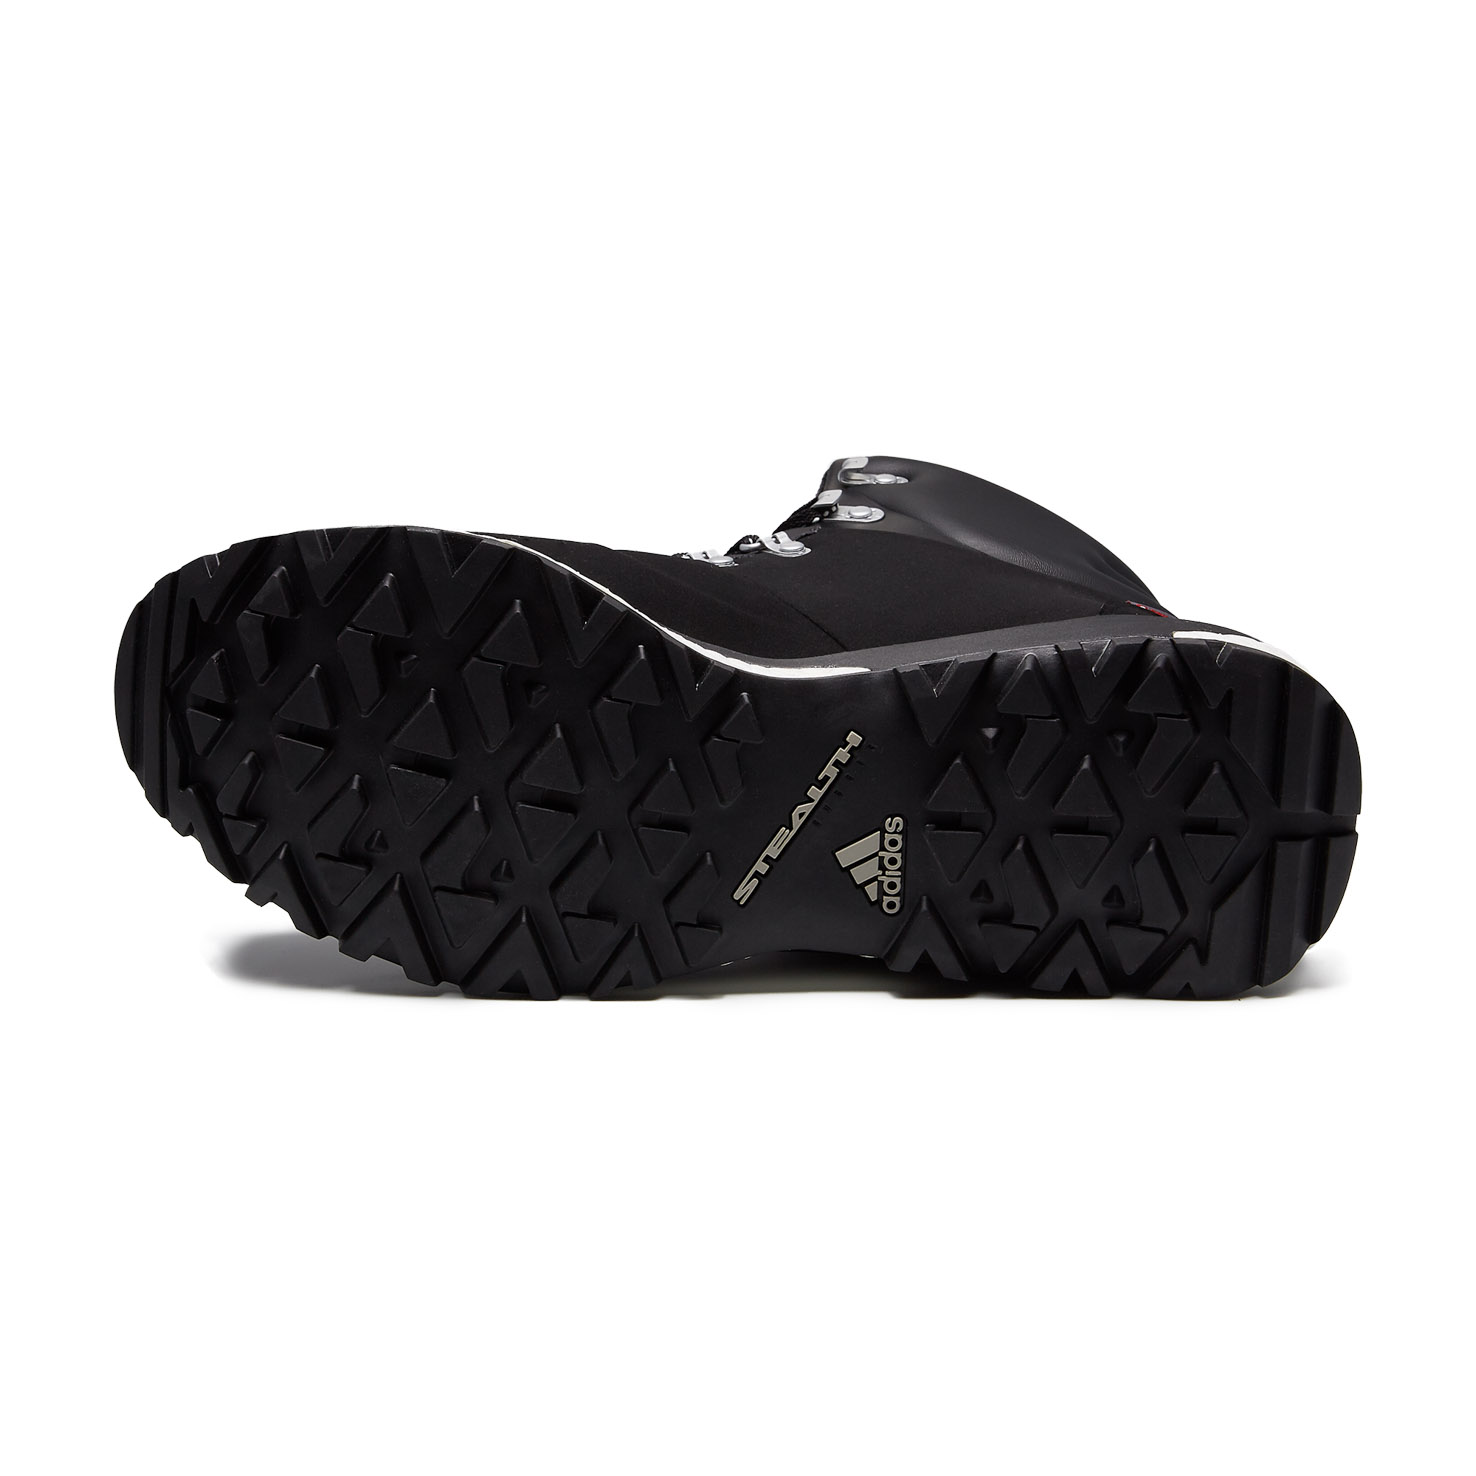 TERREX PATHMAKER CW Adidas, размер 44, цвет черный ADS80795 - фото 6